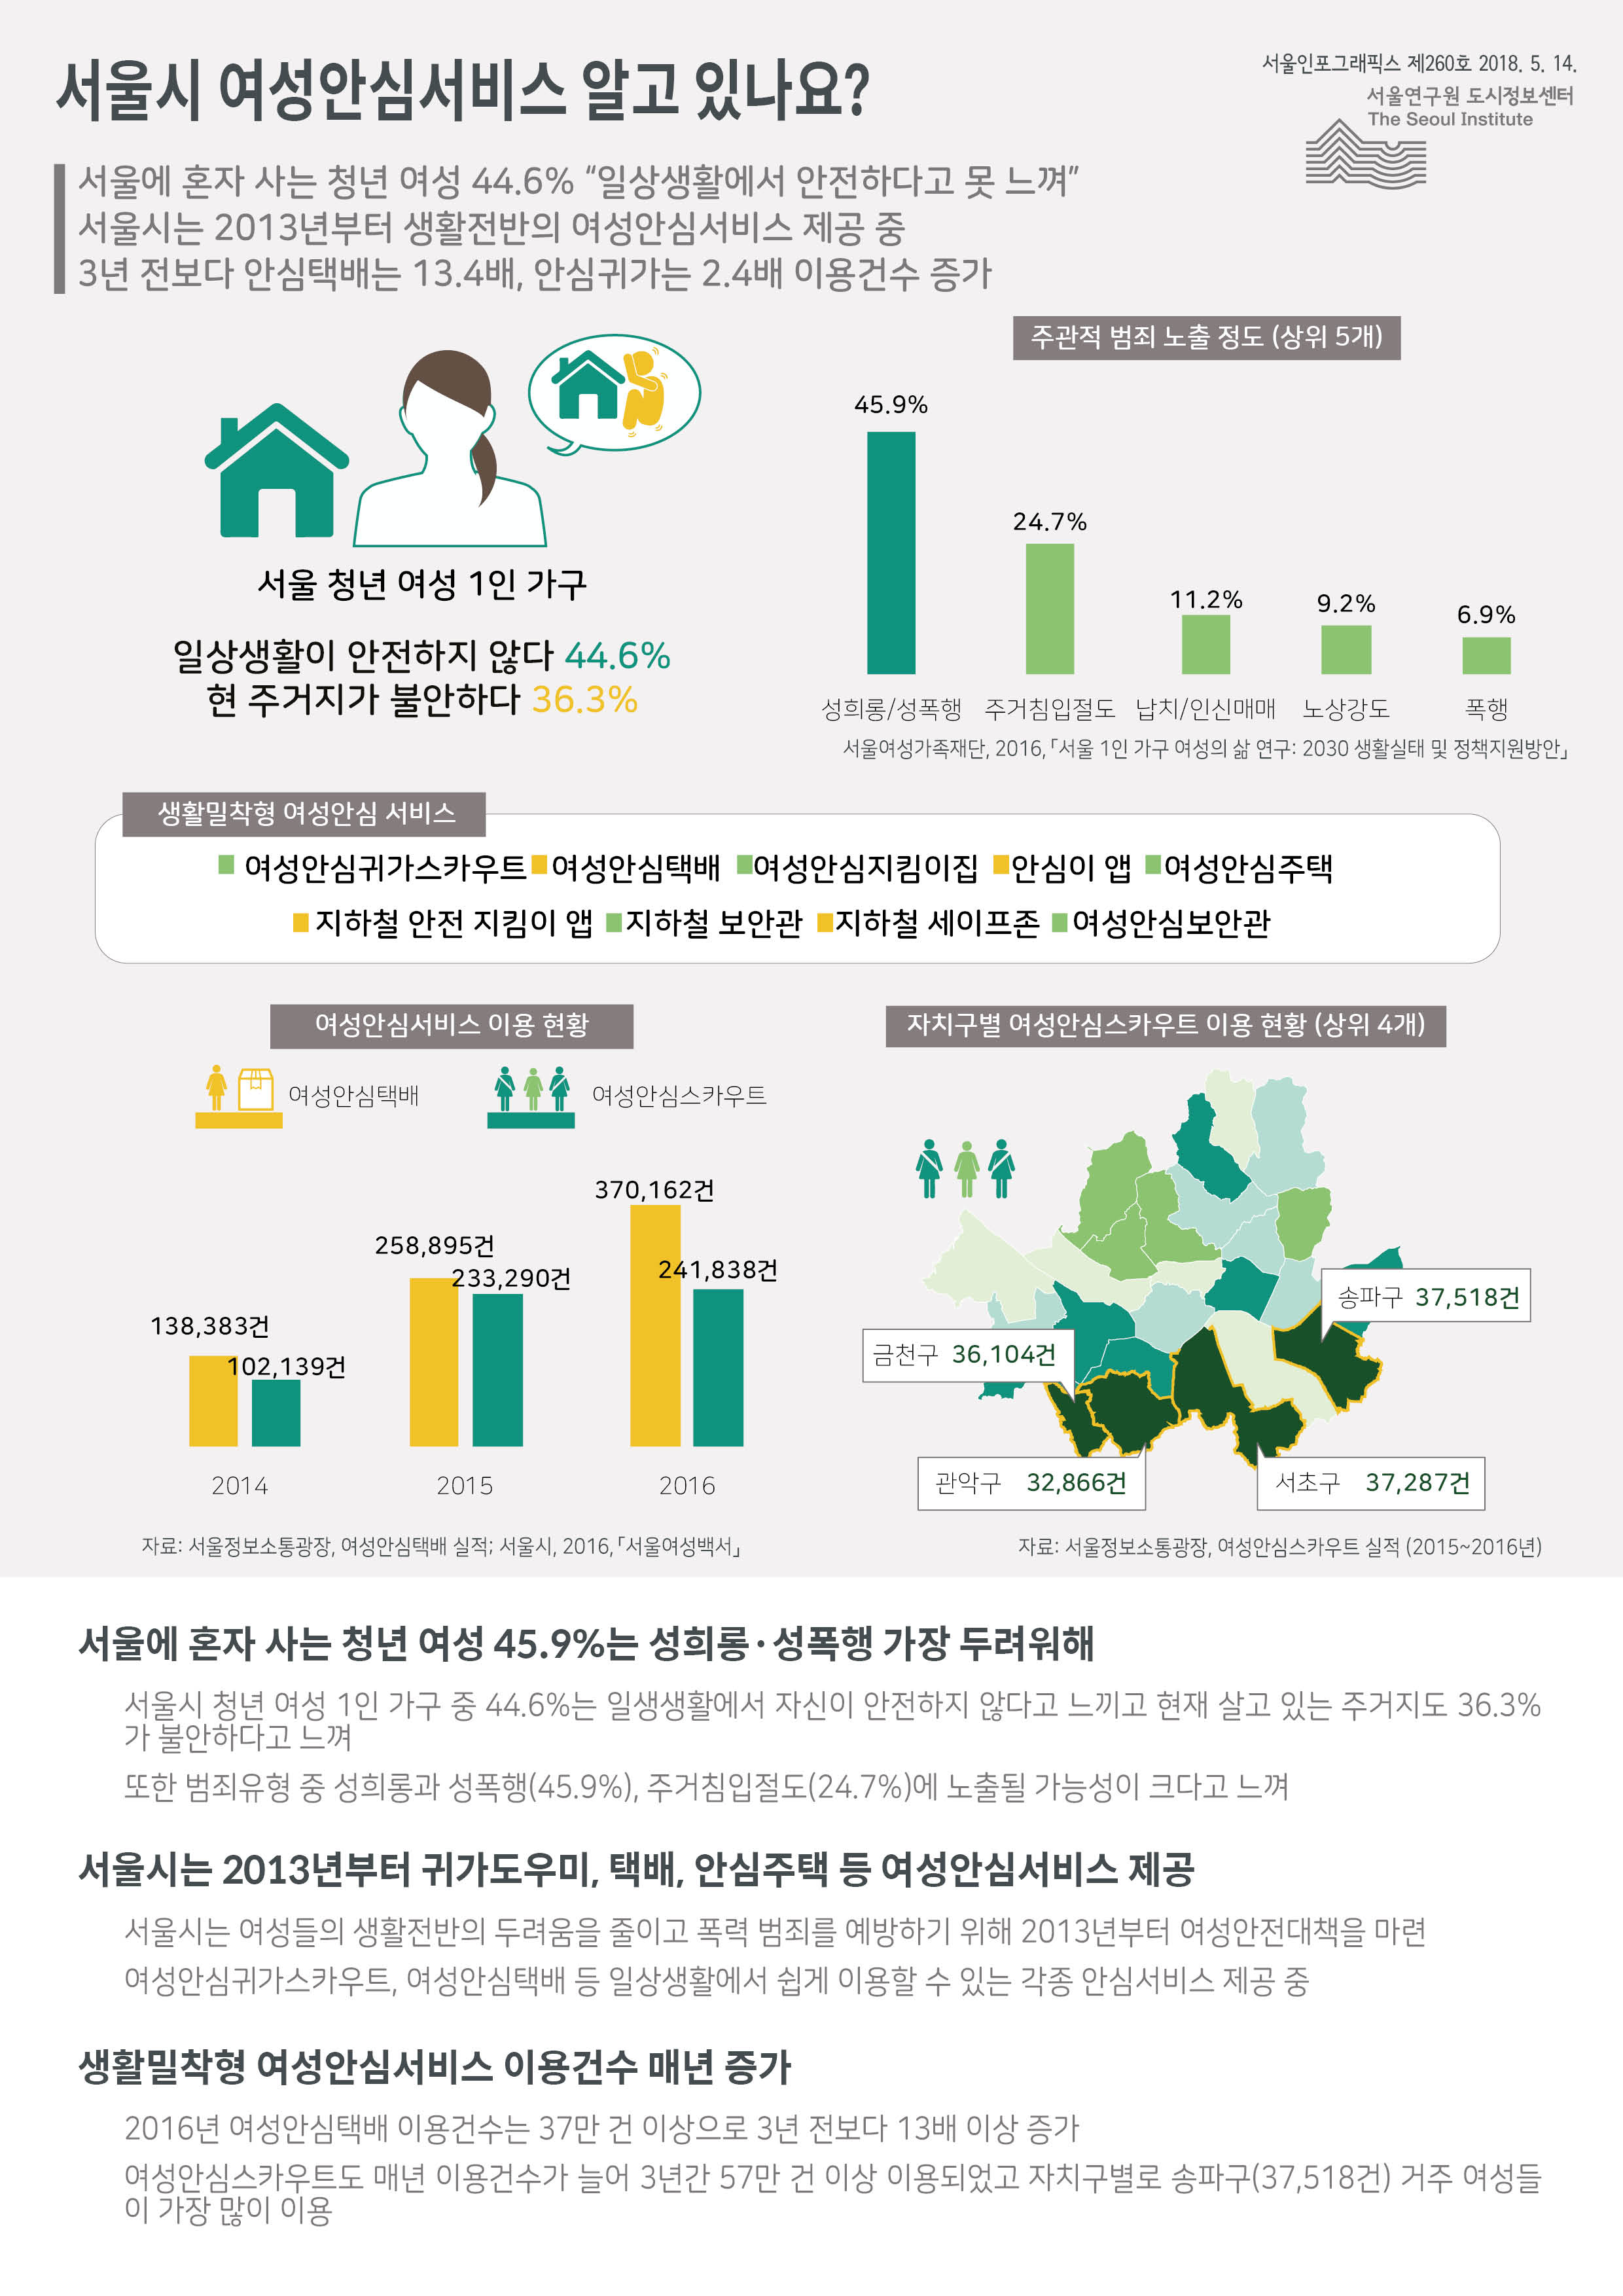 서울에 혼자 사는 청년 여성 44.6% 일상생활에서 안전하다고 못 느낀다고 응답. 서울시는 2013년부터 생활전반의 여성안심서비스 제공 중. 3년 전보다 안심택배는 13.4배, 안심귀가는 2.4배 이용건수 증가함으로 정리 될 수 있습니다. 인포그래픽으로 제공되는 그래픽은 하단에 표로 자세히 제공됩니다.